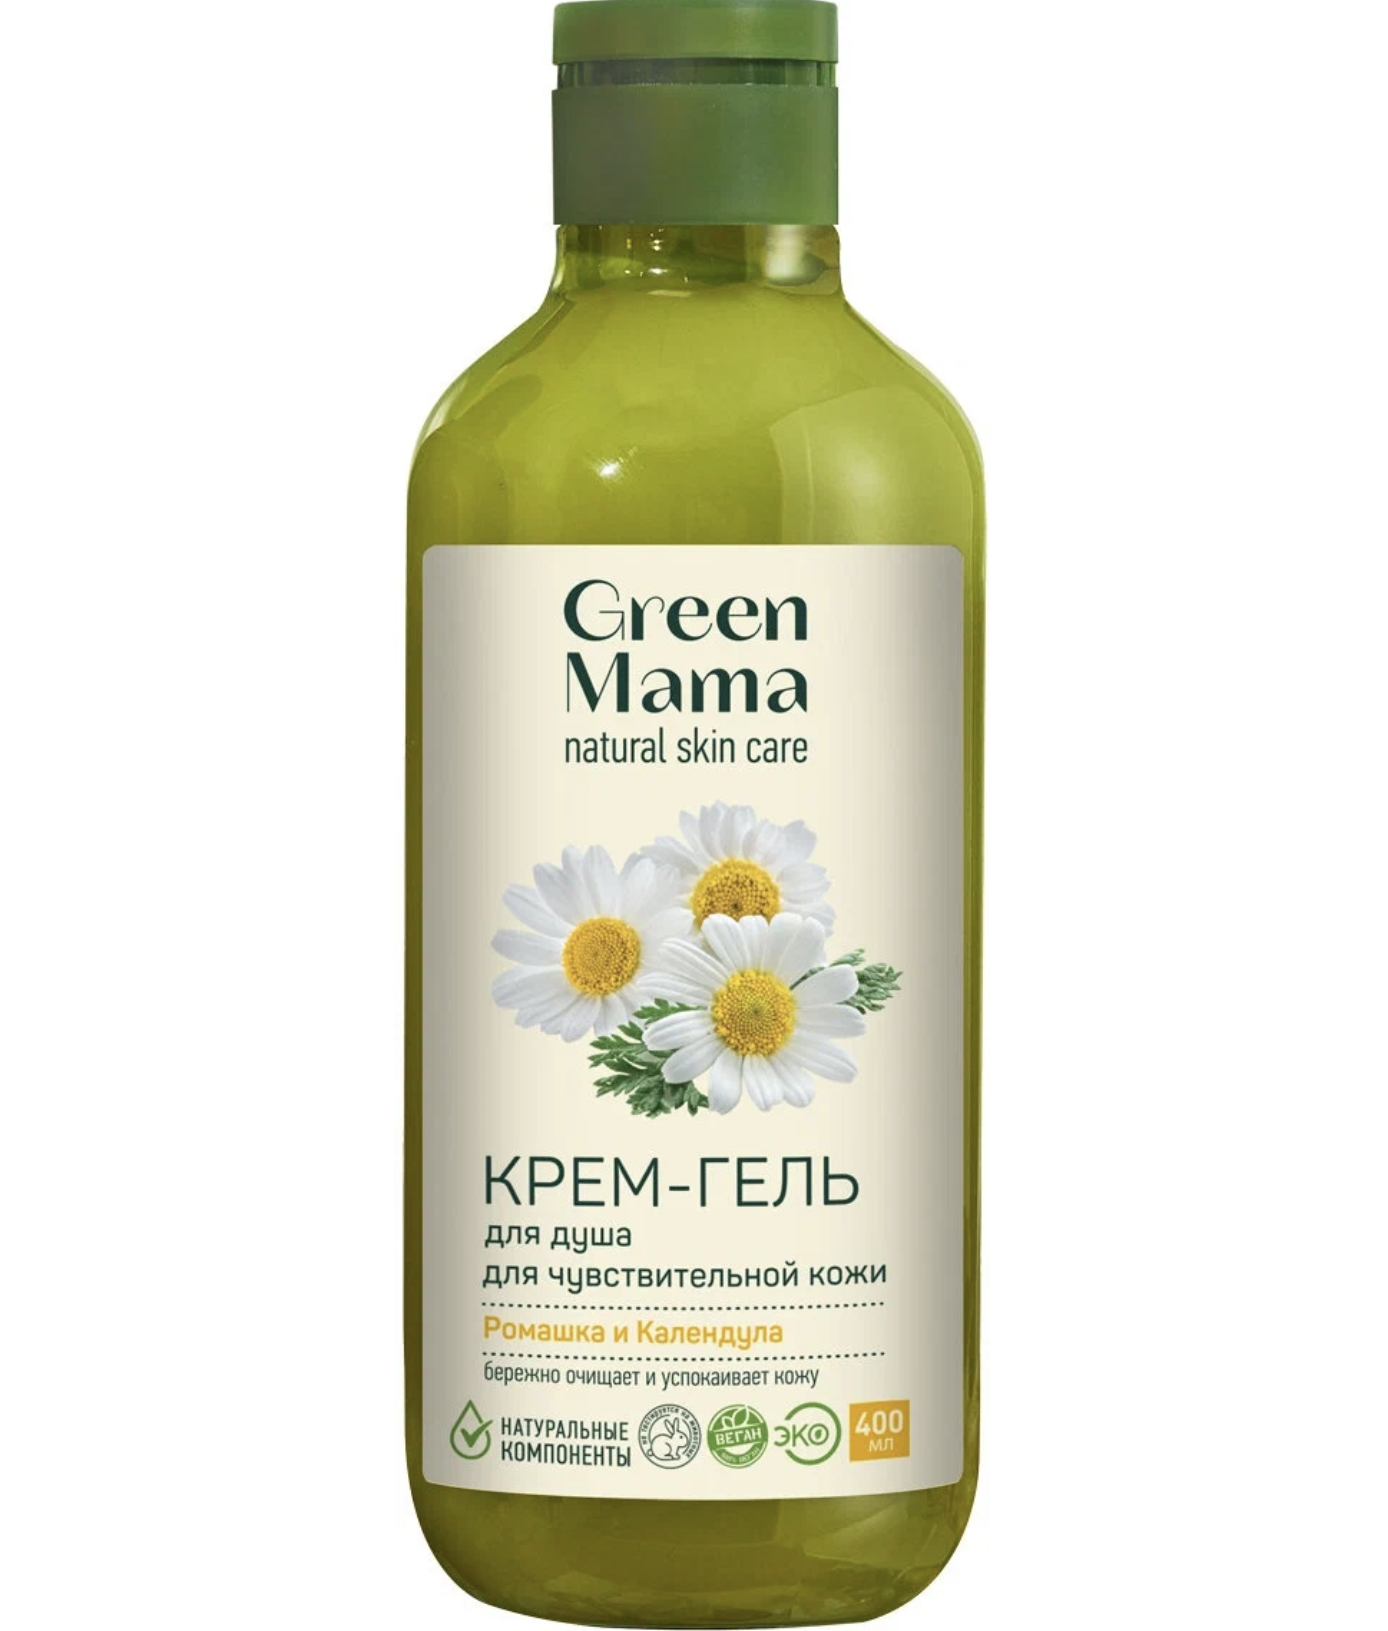    / Green Mama Natural Skin Care -       400 